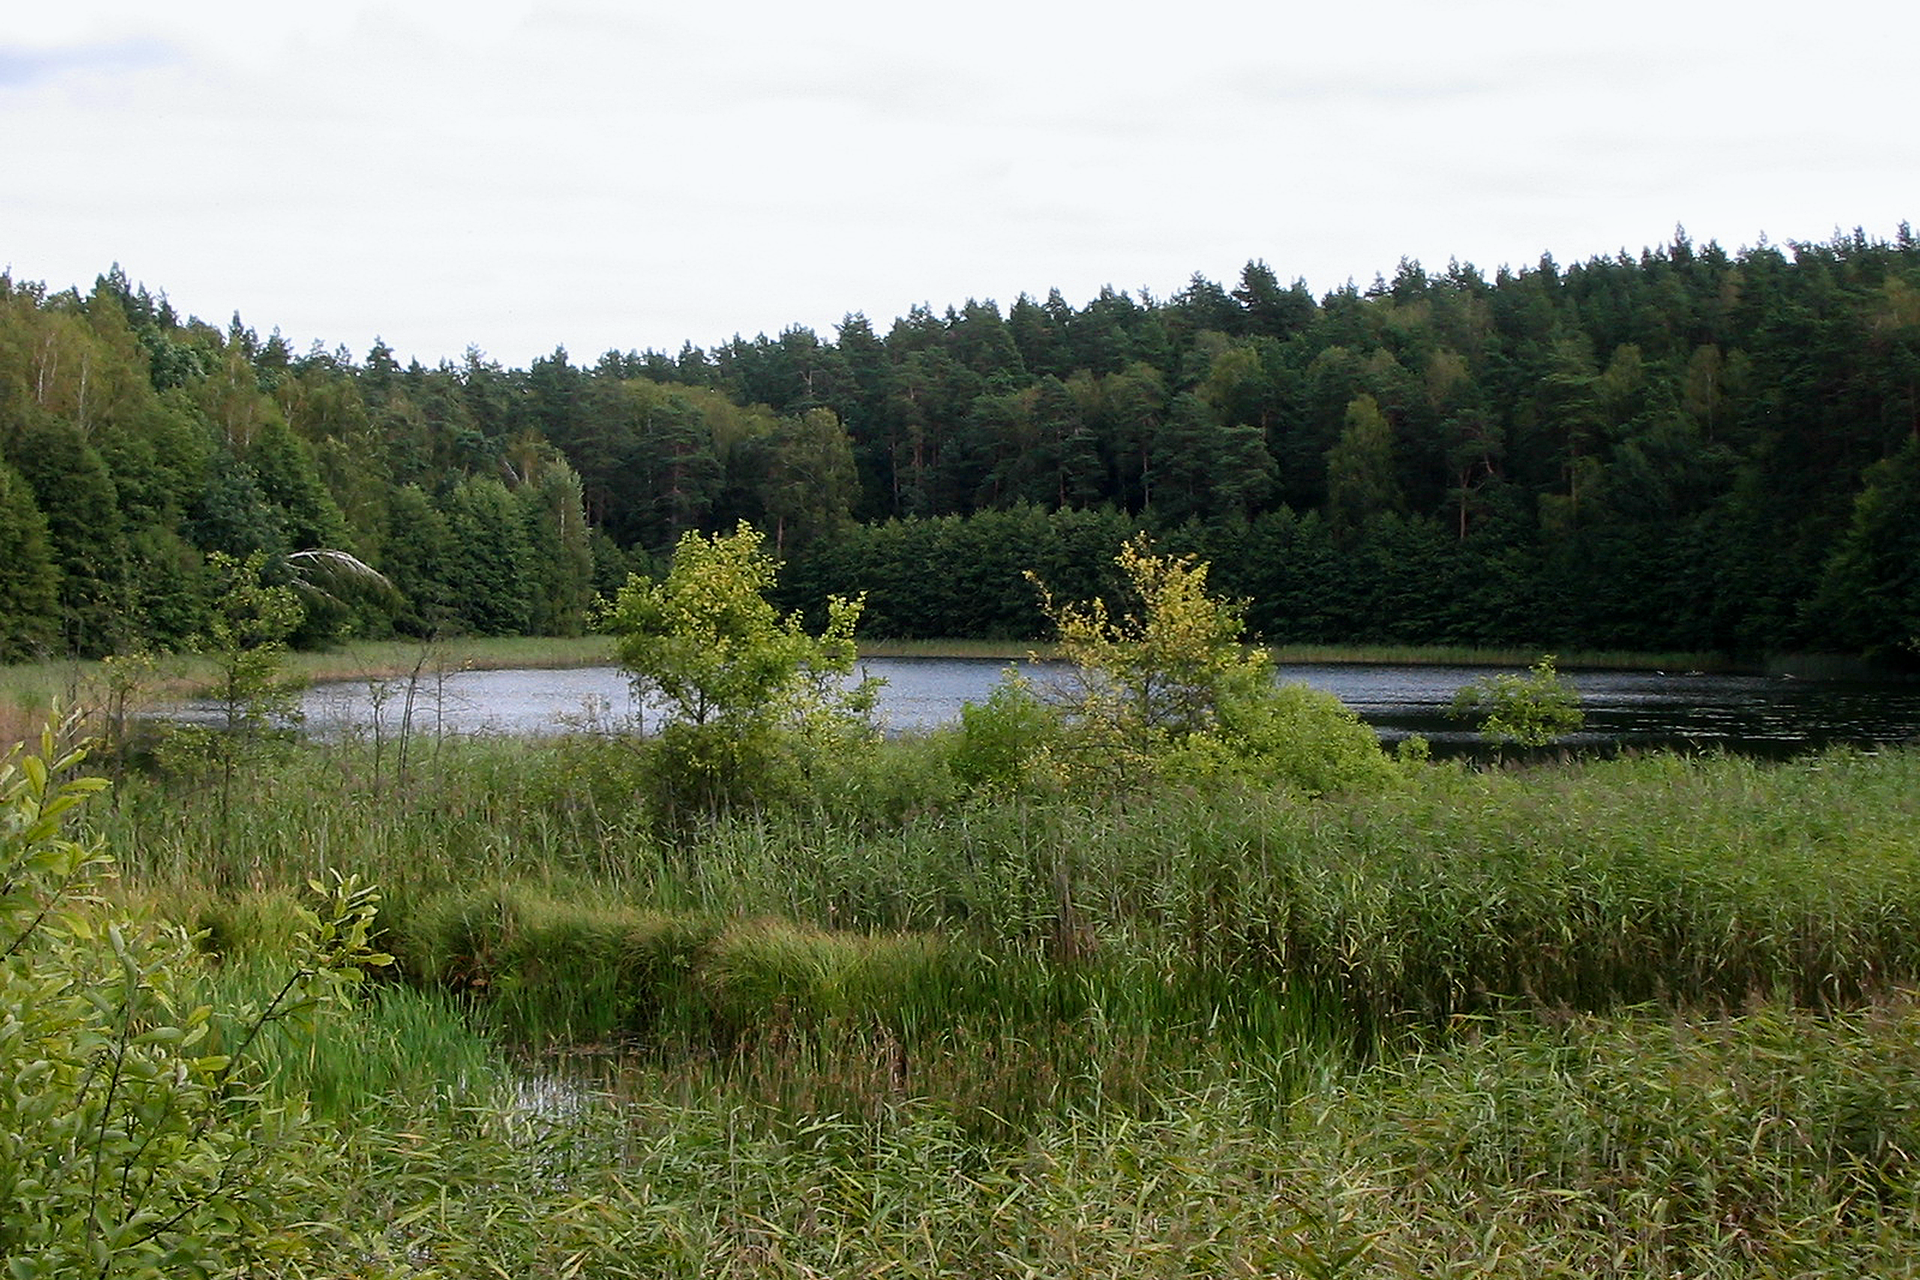 Fotografia przedstawia jezioro w lesie. Na pierwszym planie zarośla trzciny i drzewka. To rezerwat Jezioro Orłowo Małe w województwie warmińsko – mazurskim. Jest miejscem ochrony żółwia błotnego.